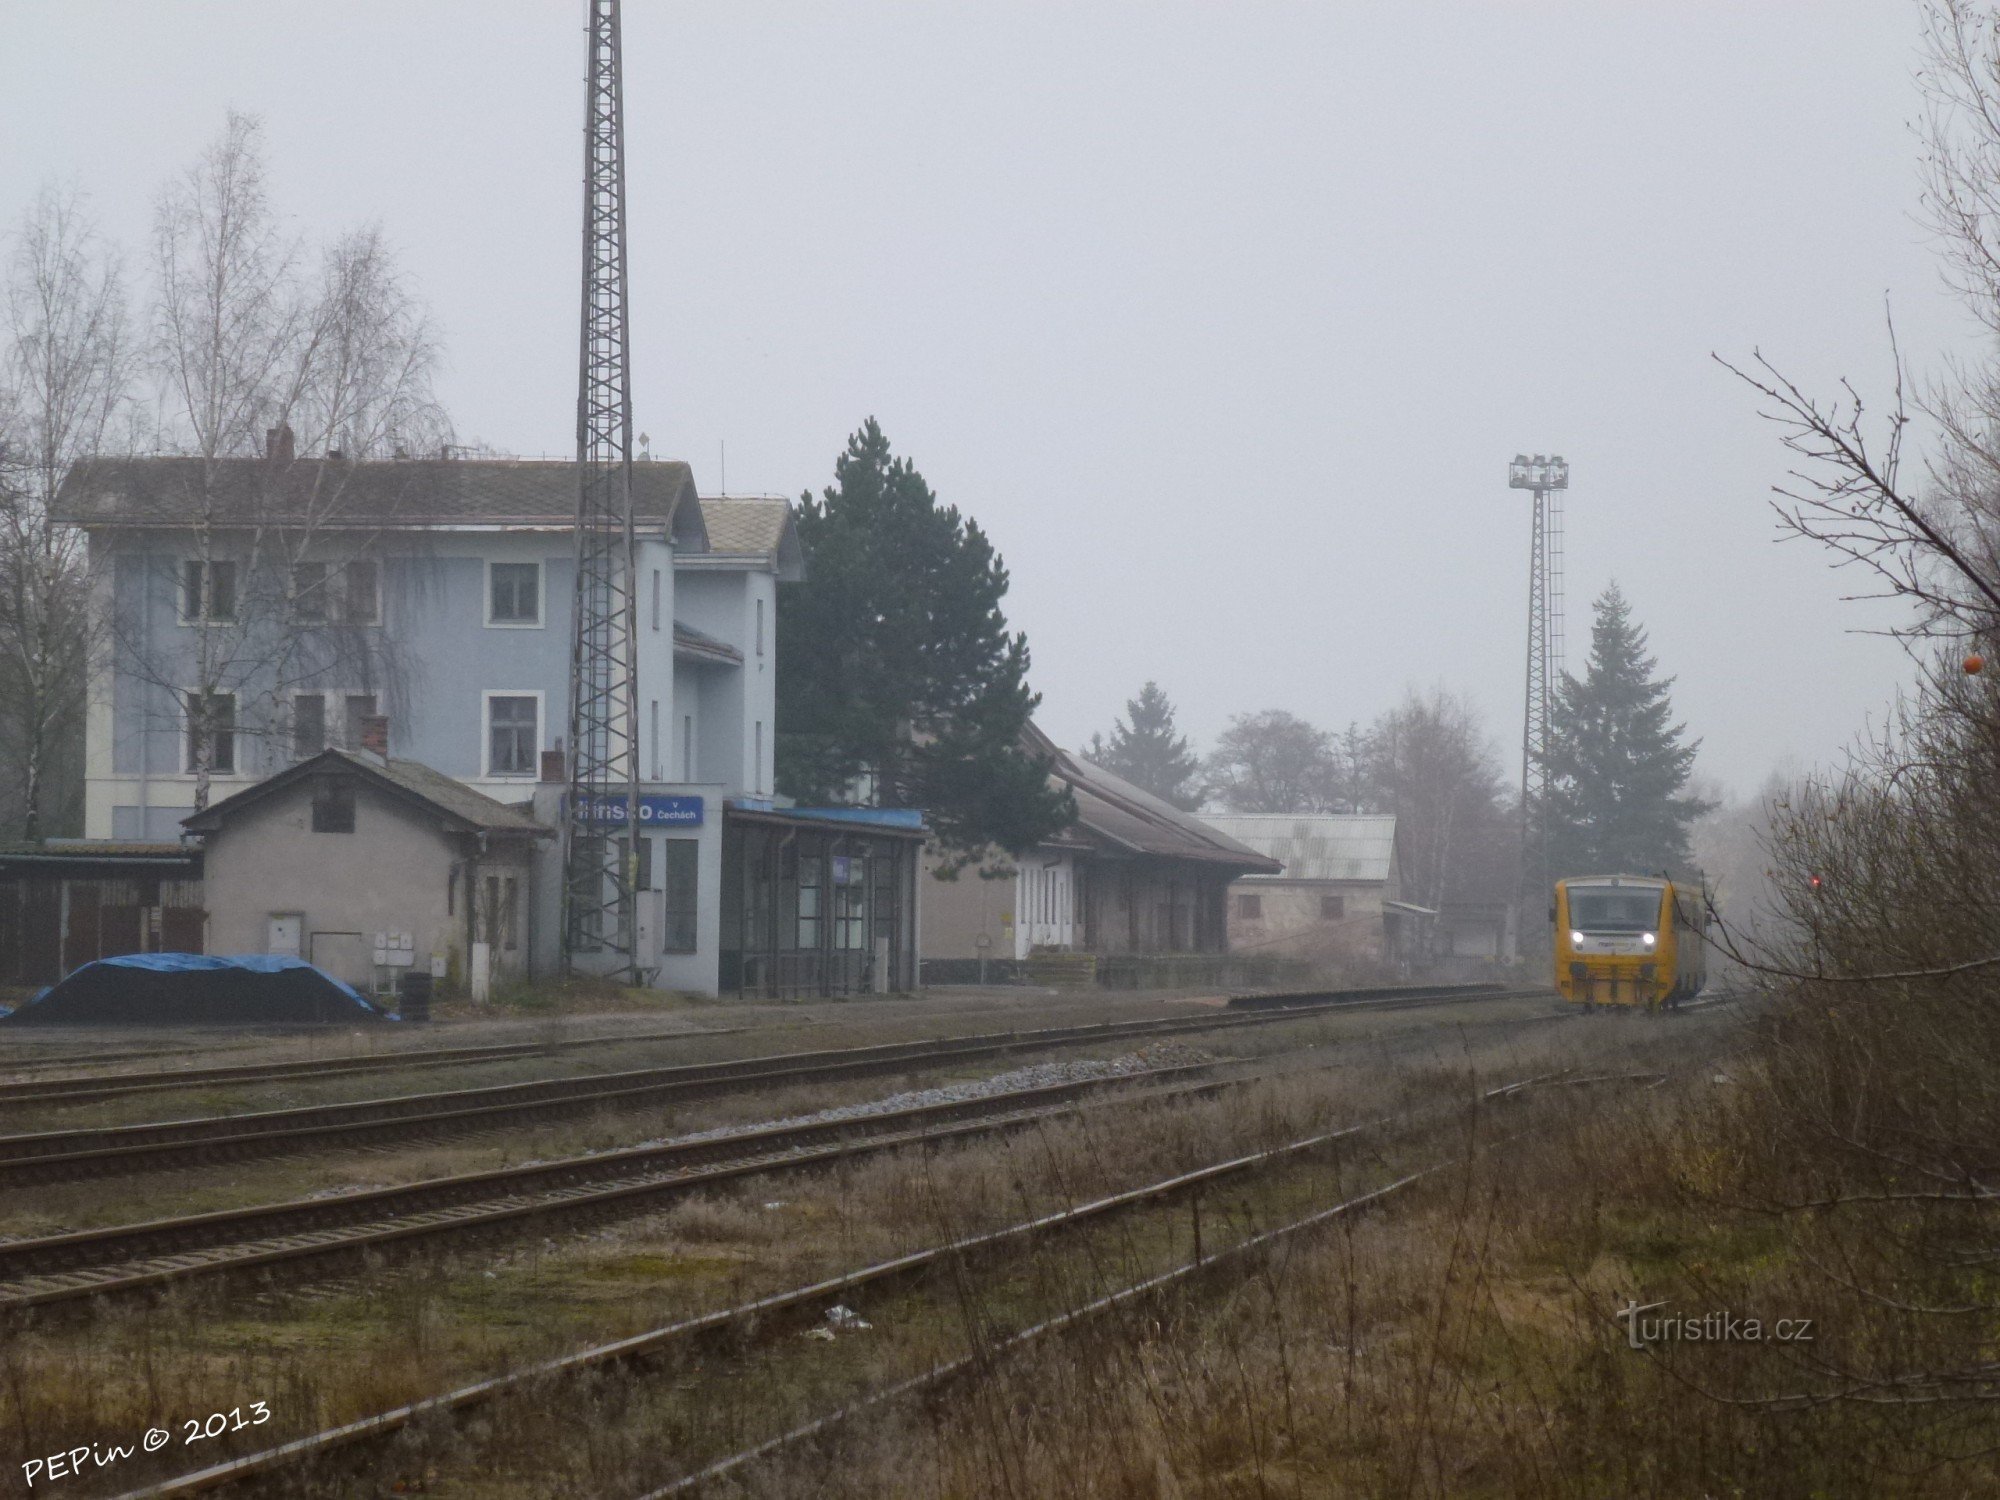 Hlinsko in Böhmen, Bahnhof, Rangierbahnhof